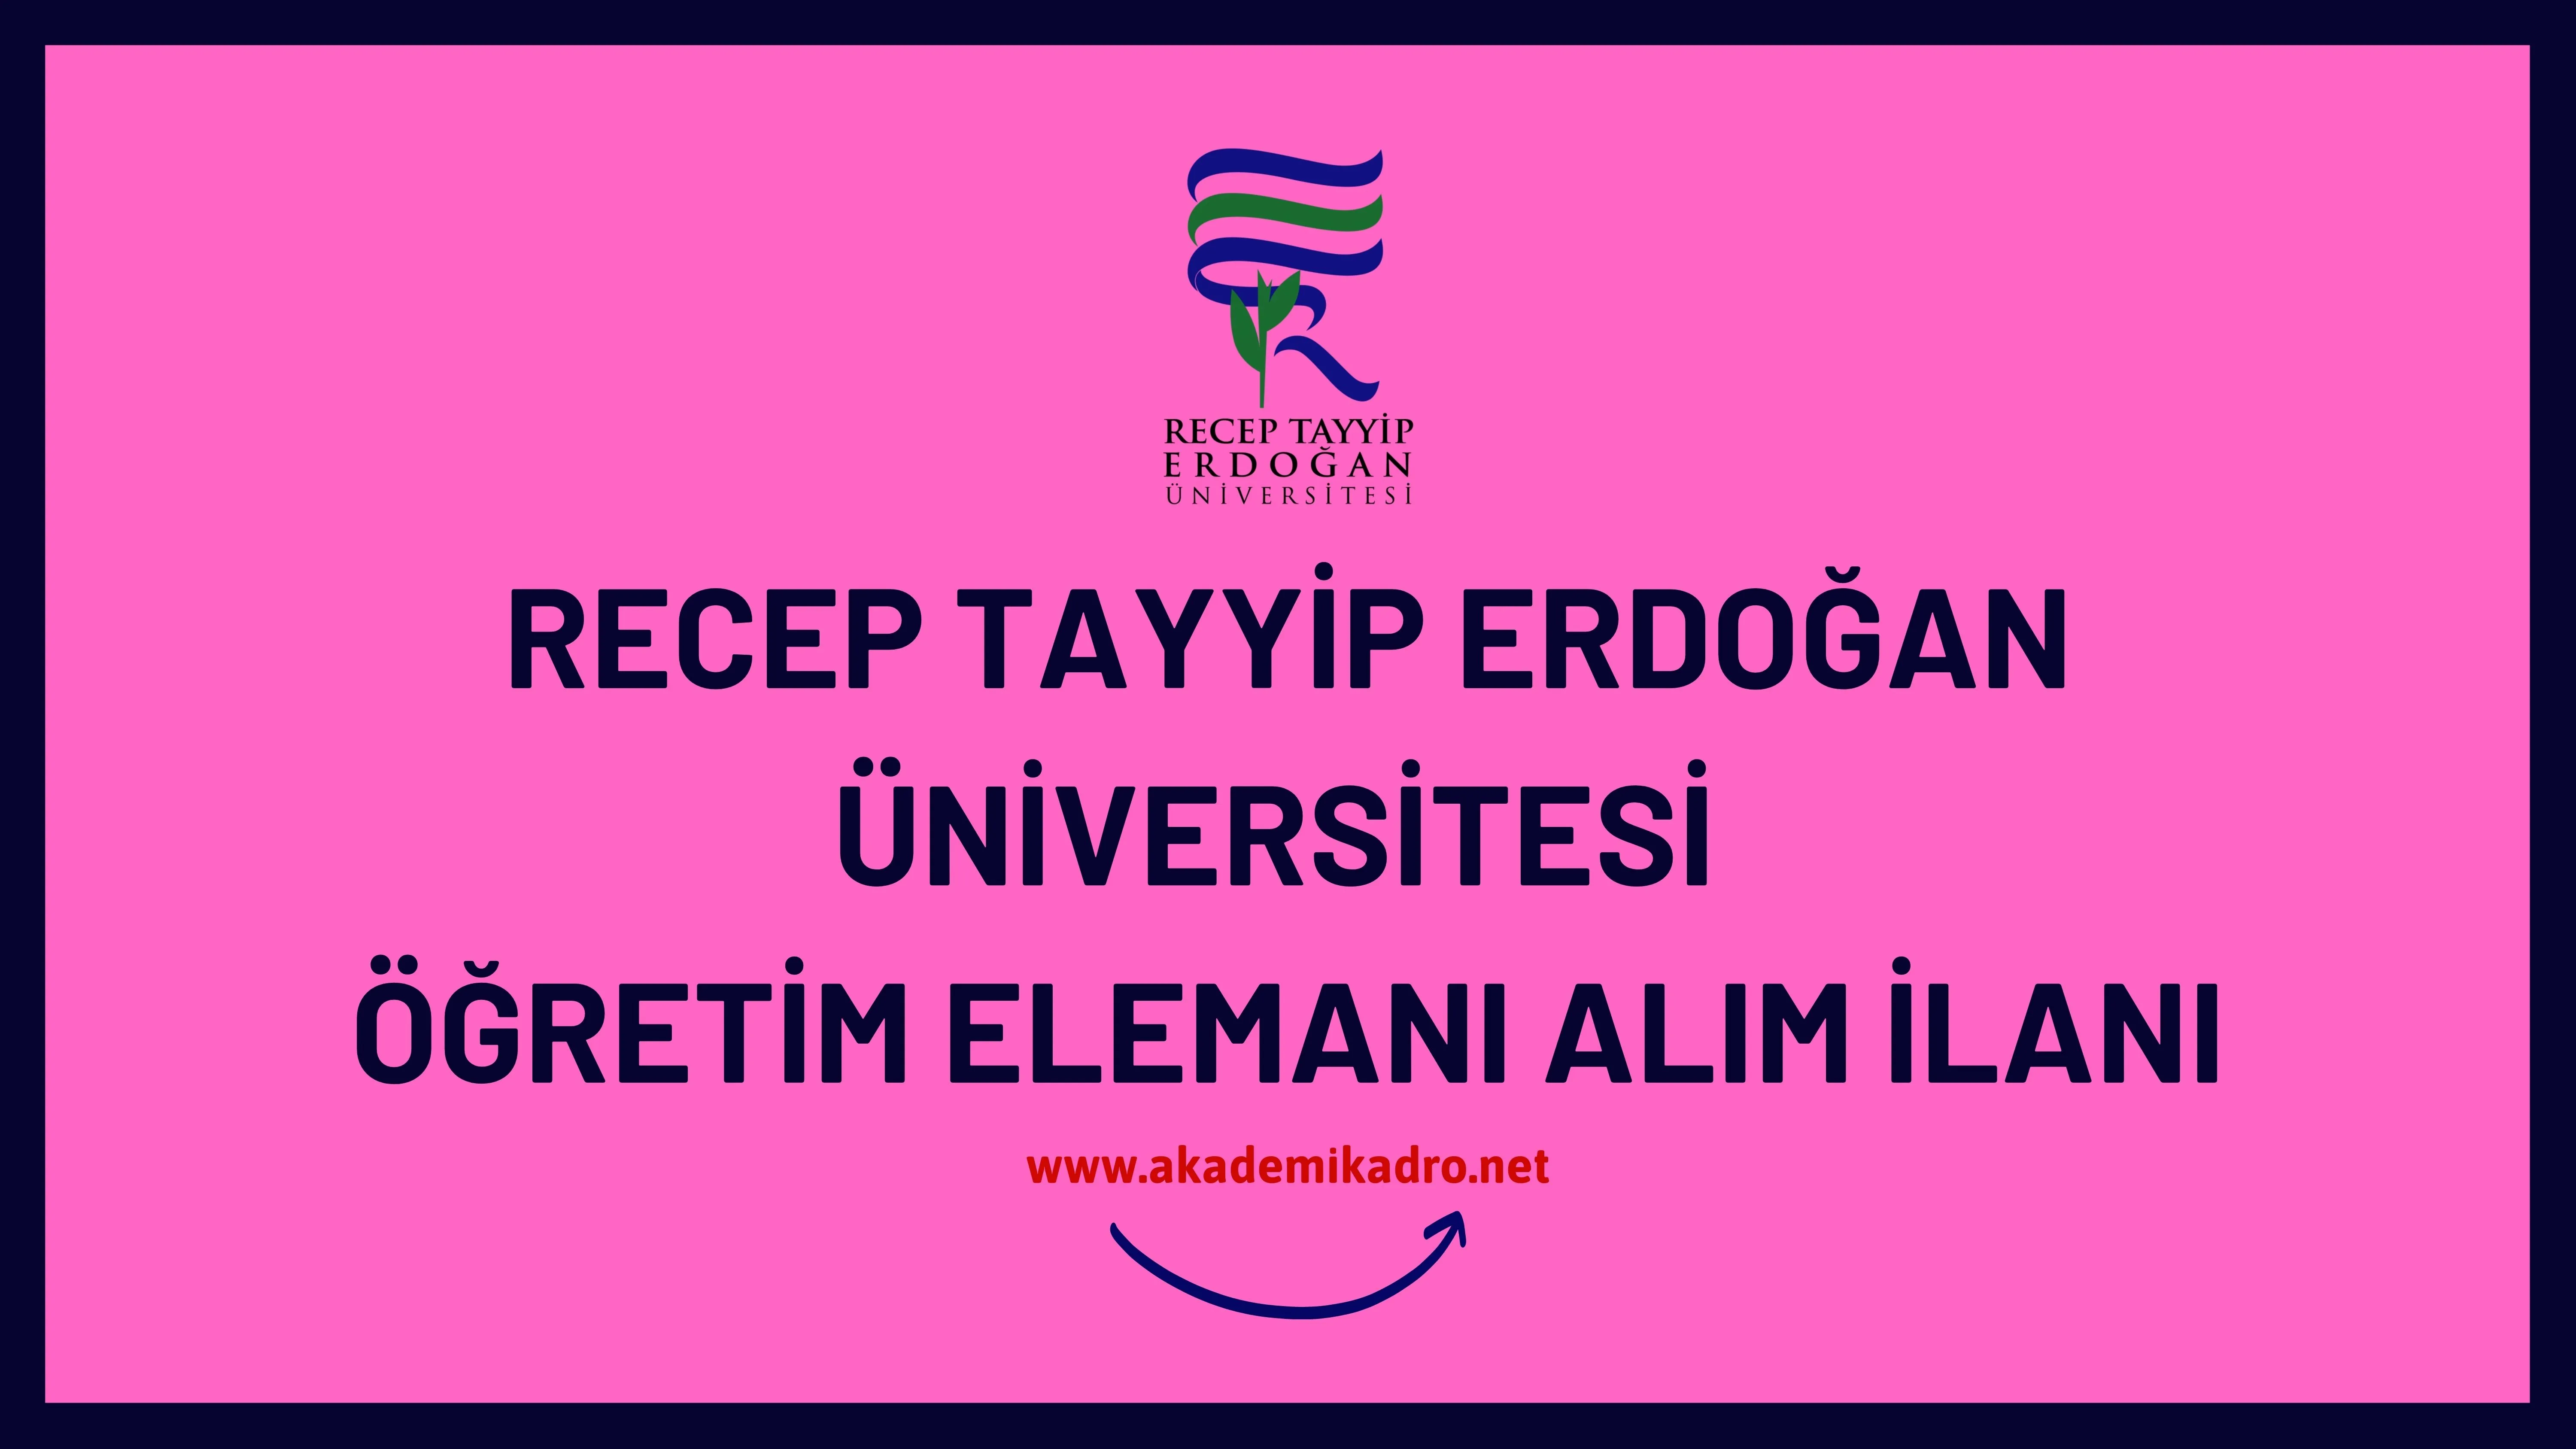 Recep Tayyip Erdoğan Üniversitesi 58 öğretim üyesi ve 2 Öğretim görevlisi alacaktır. Son başvuru tarihi 19 Aralık 2022